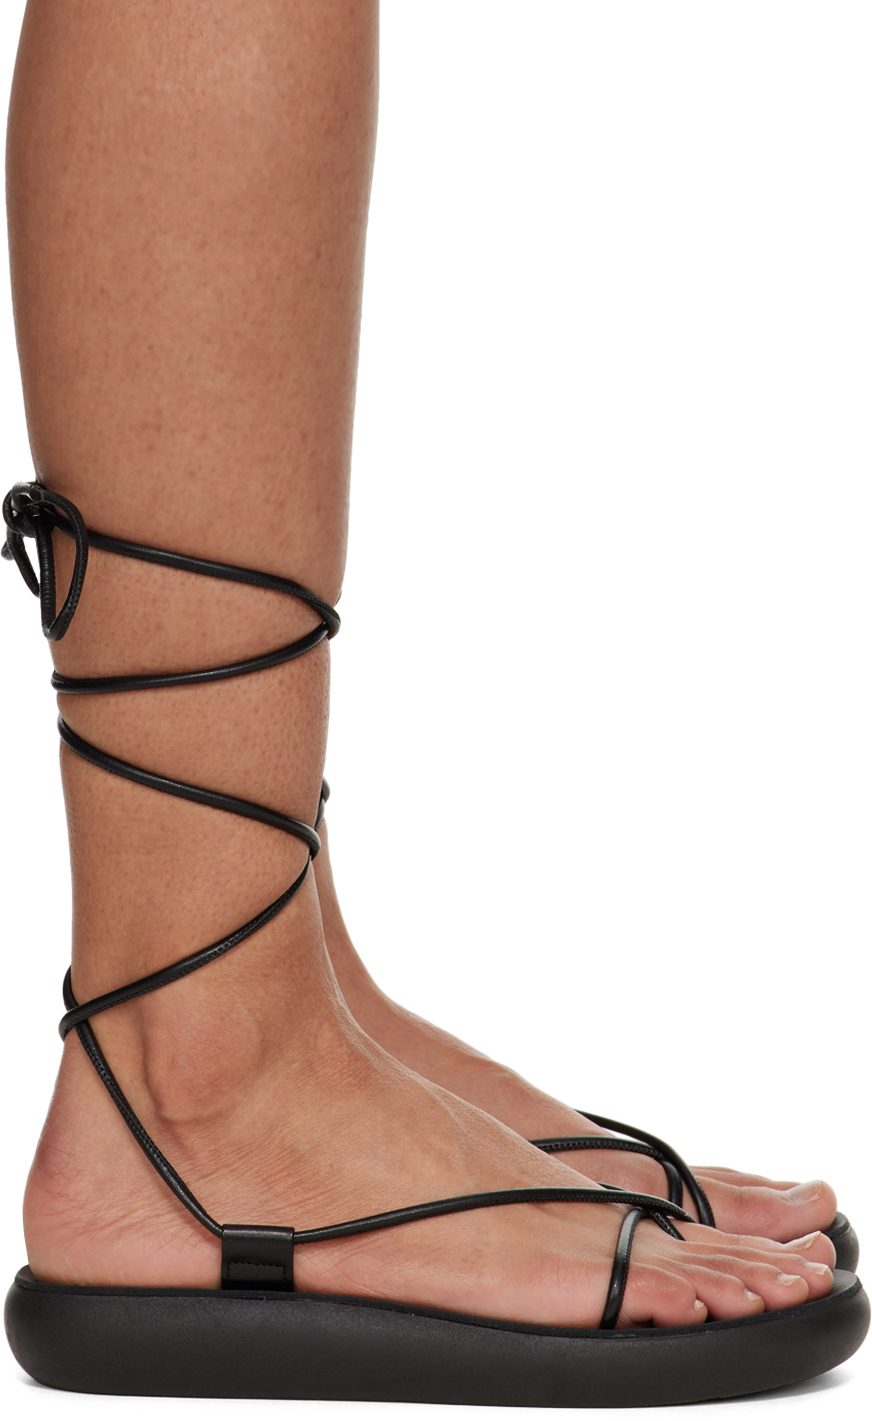 Ancient Greek Sandals Black Diakopes Comfort Sandals